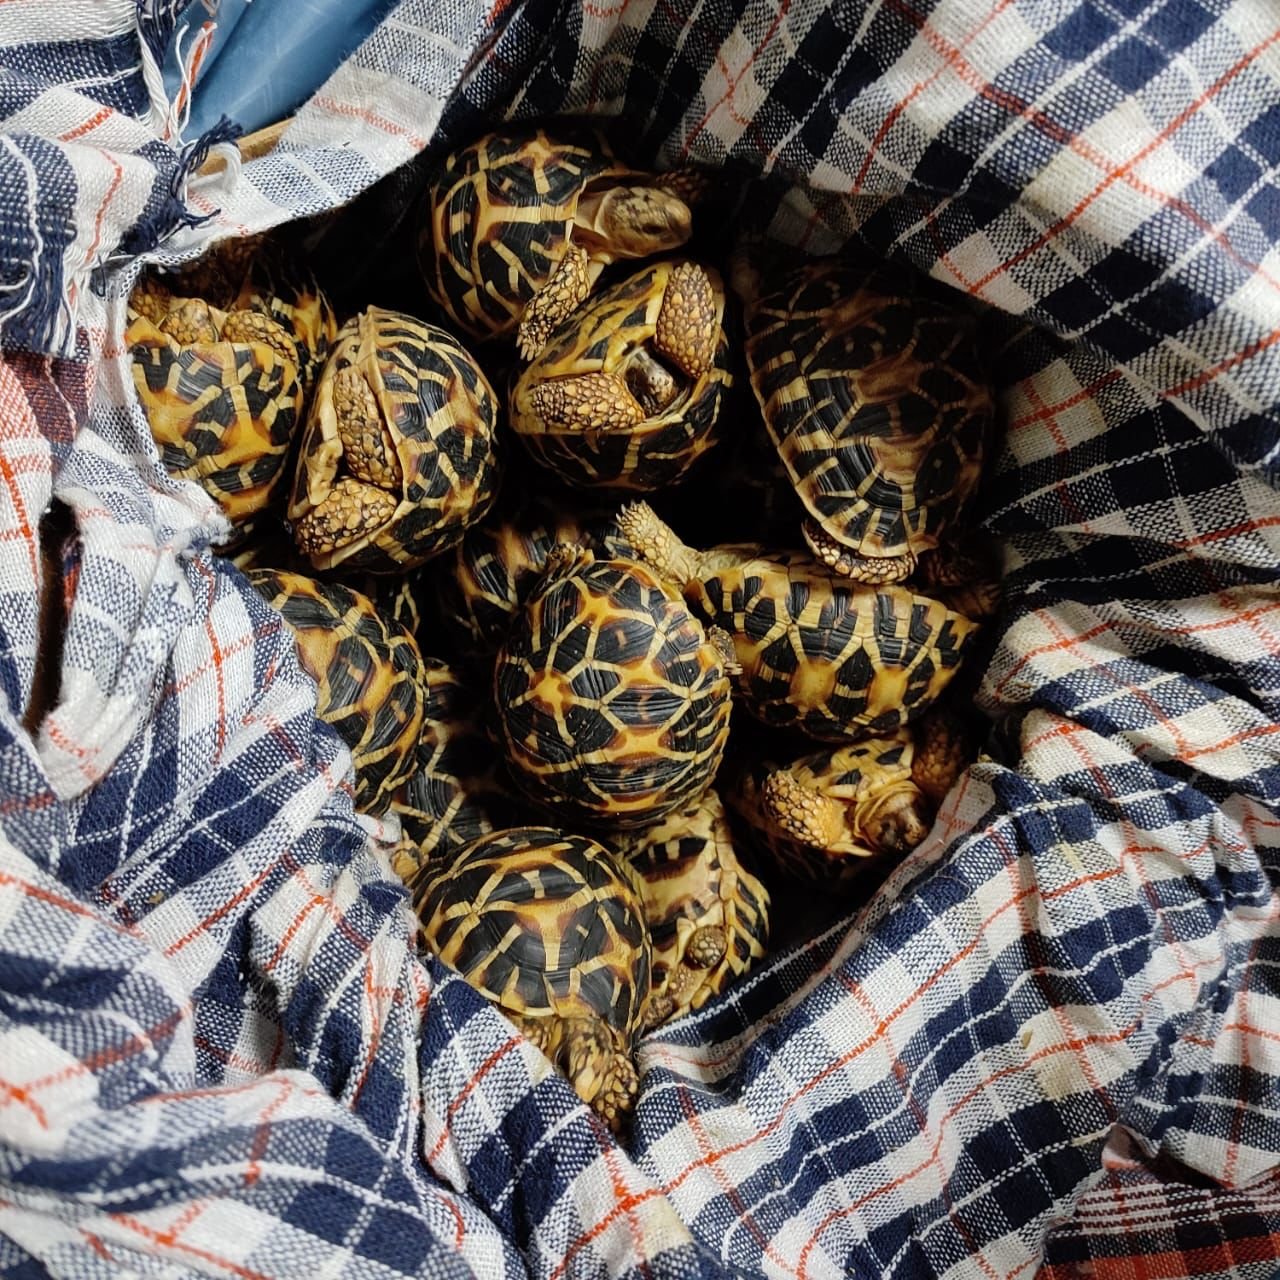 60 live star tortoises seized at KIA